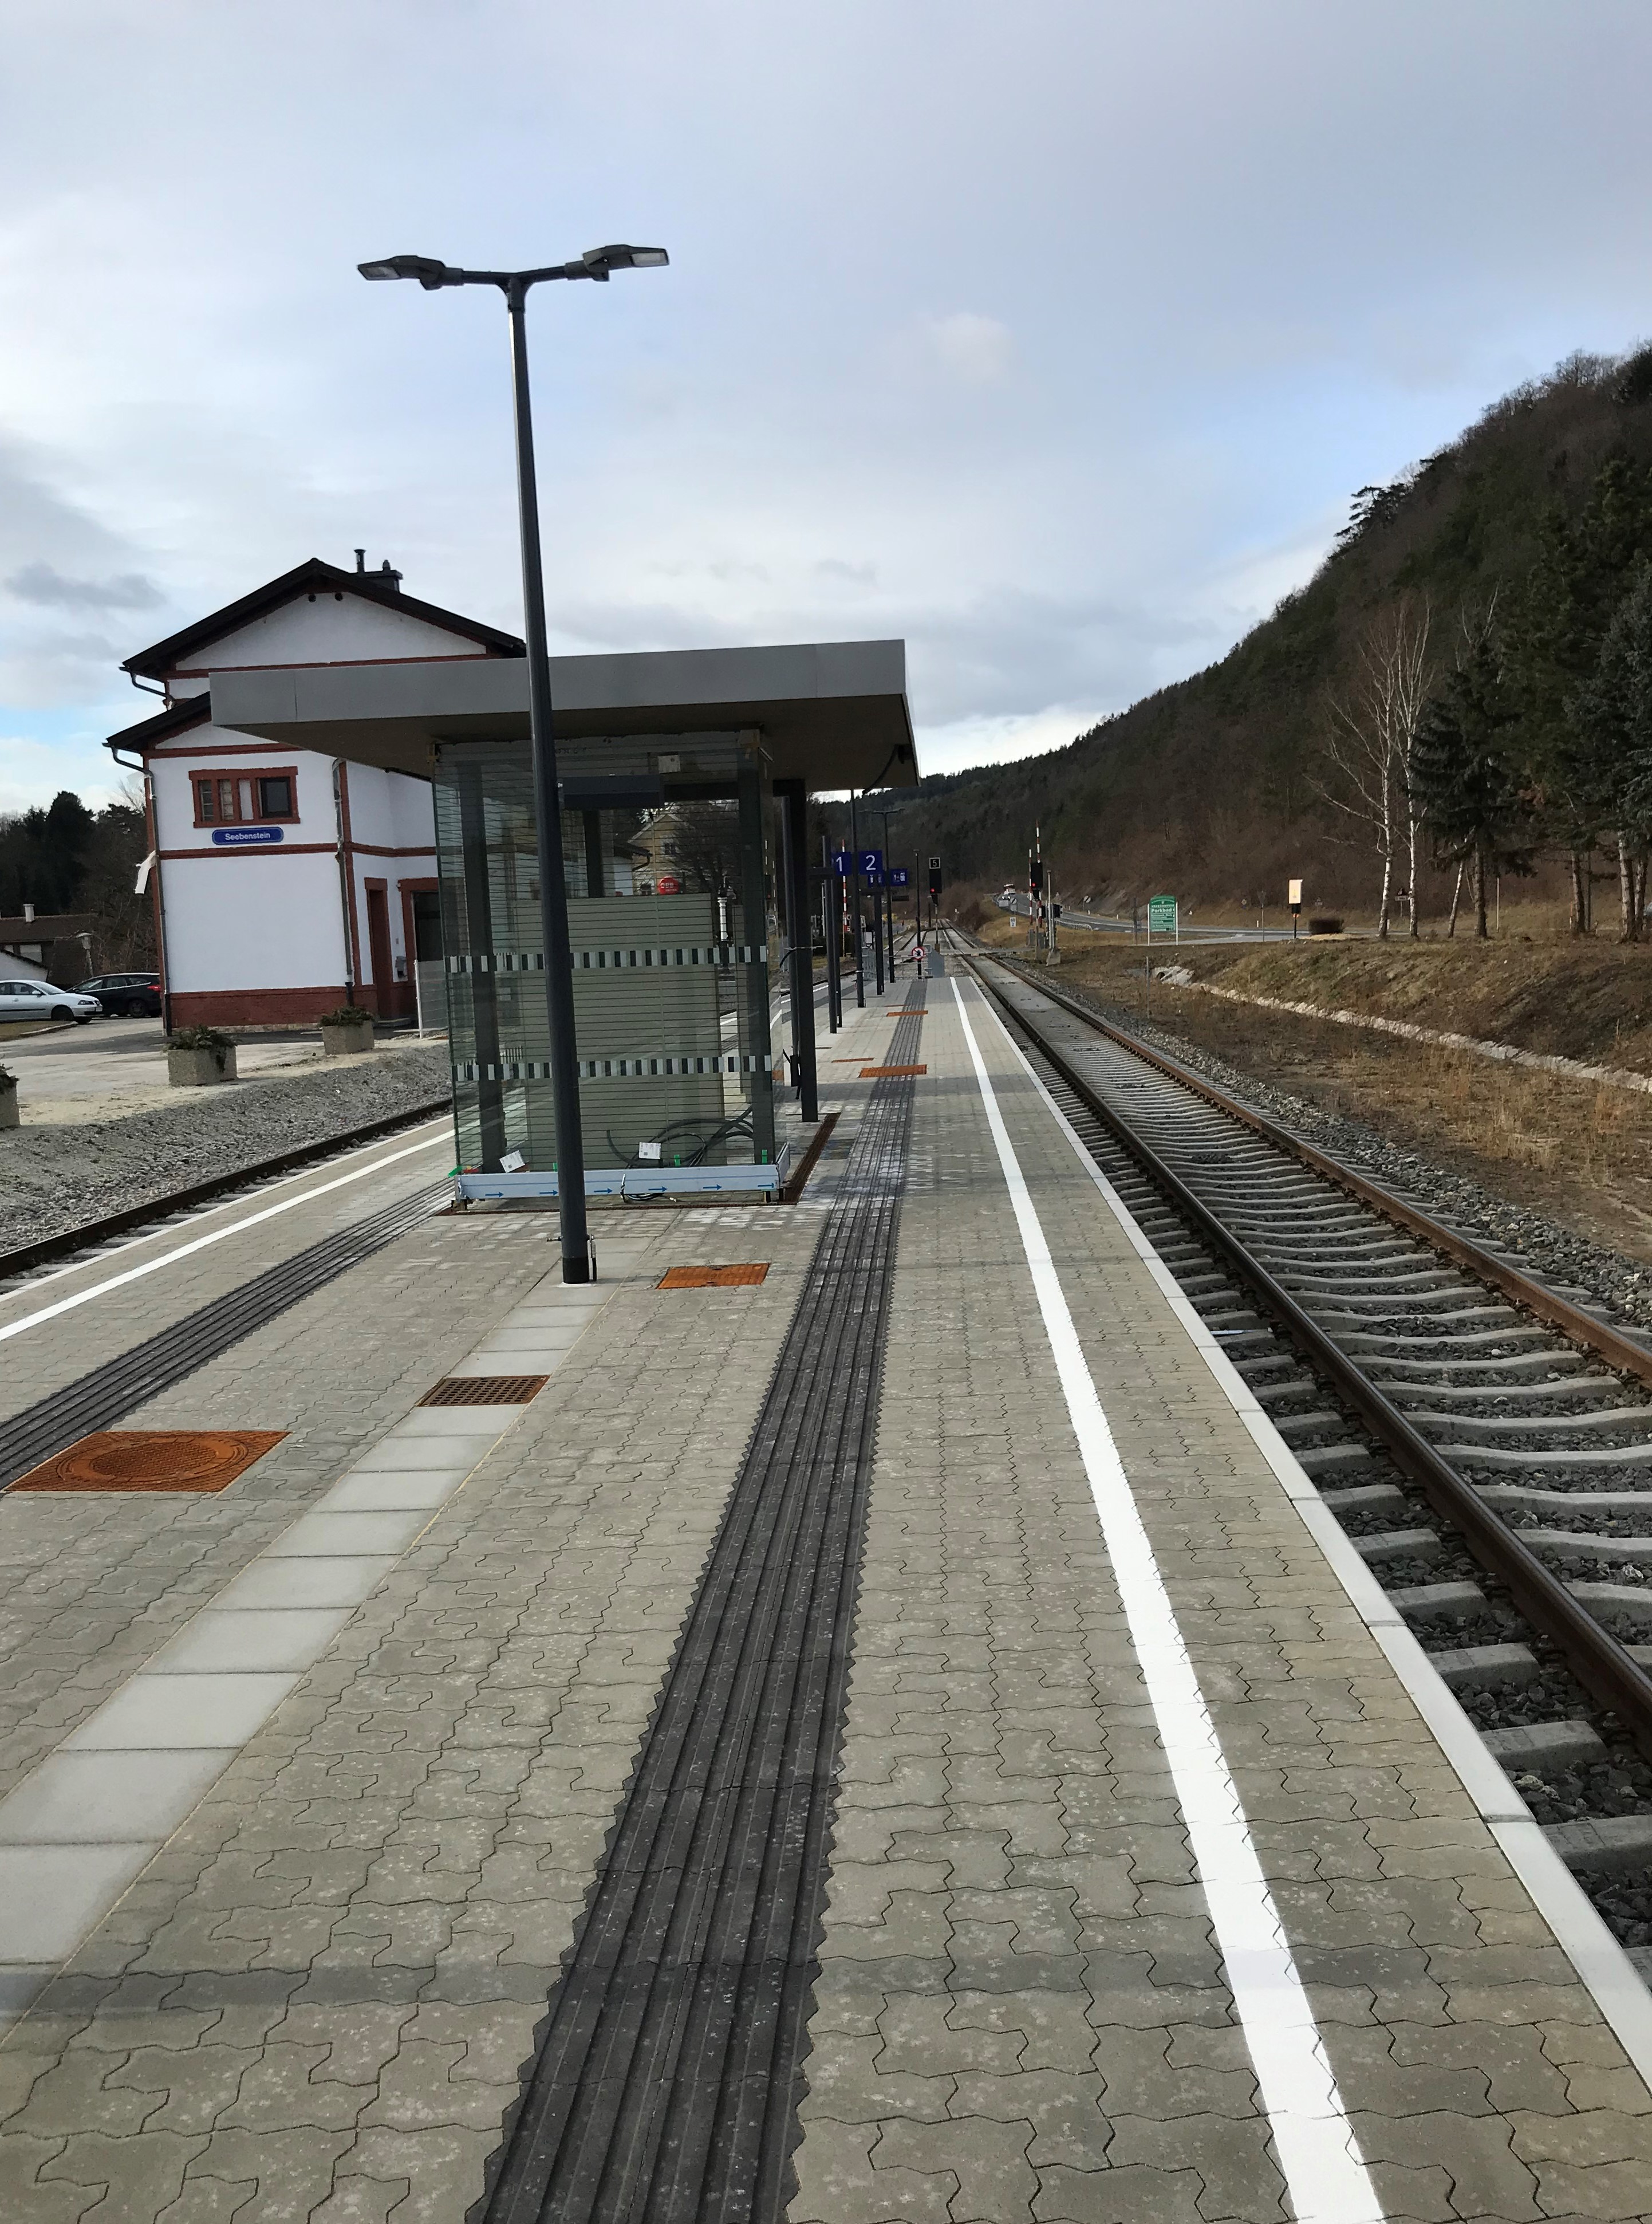 Umbau Bahnhof Seebenstein - Budownictwo lądowe podziemne